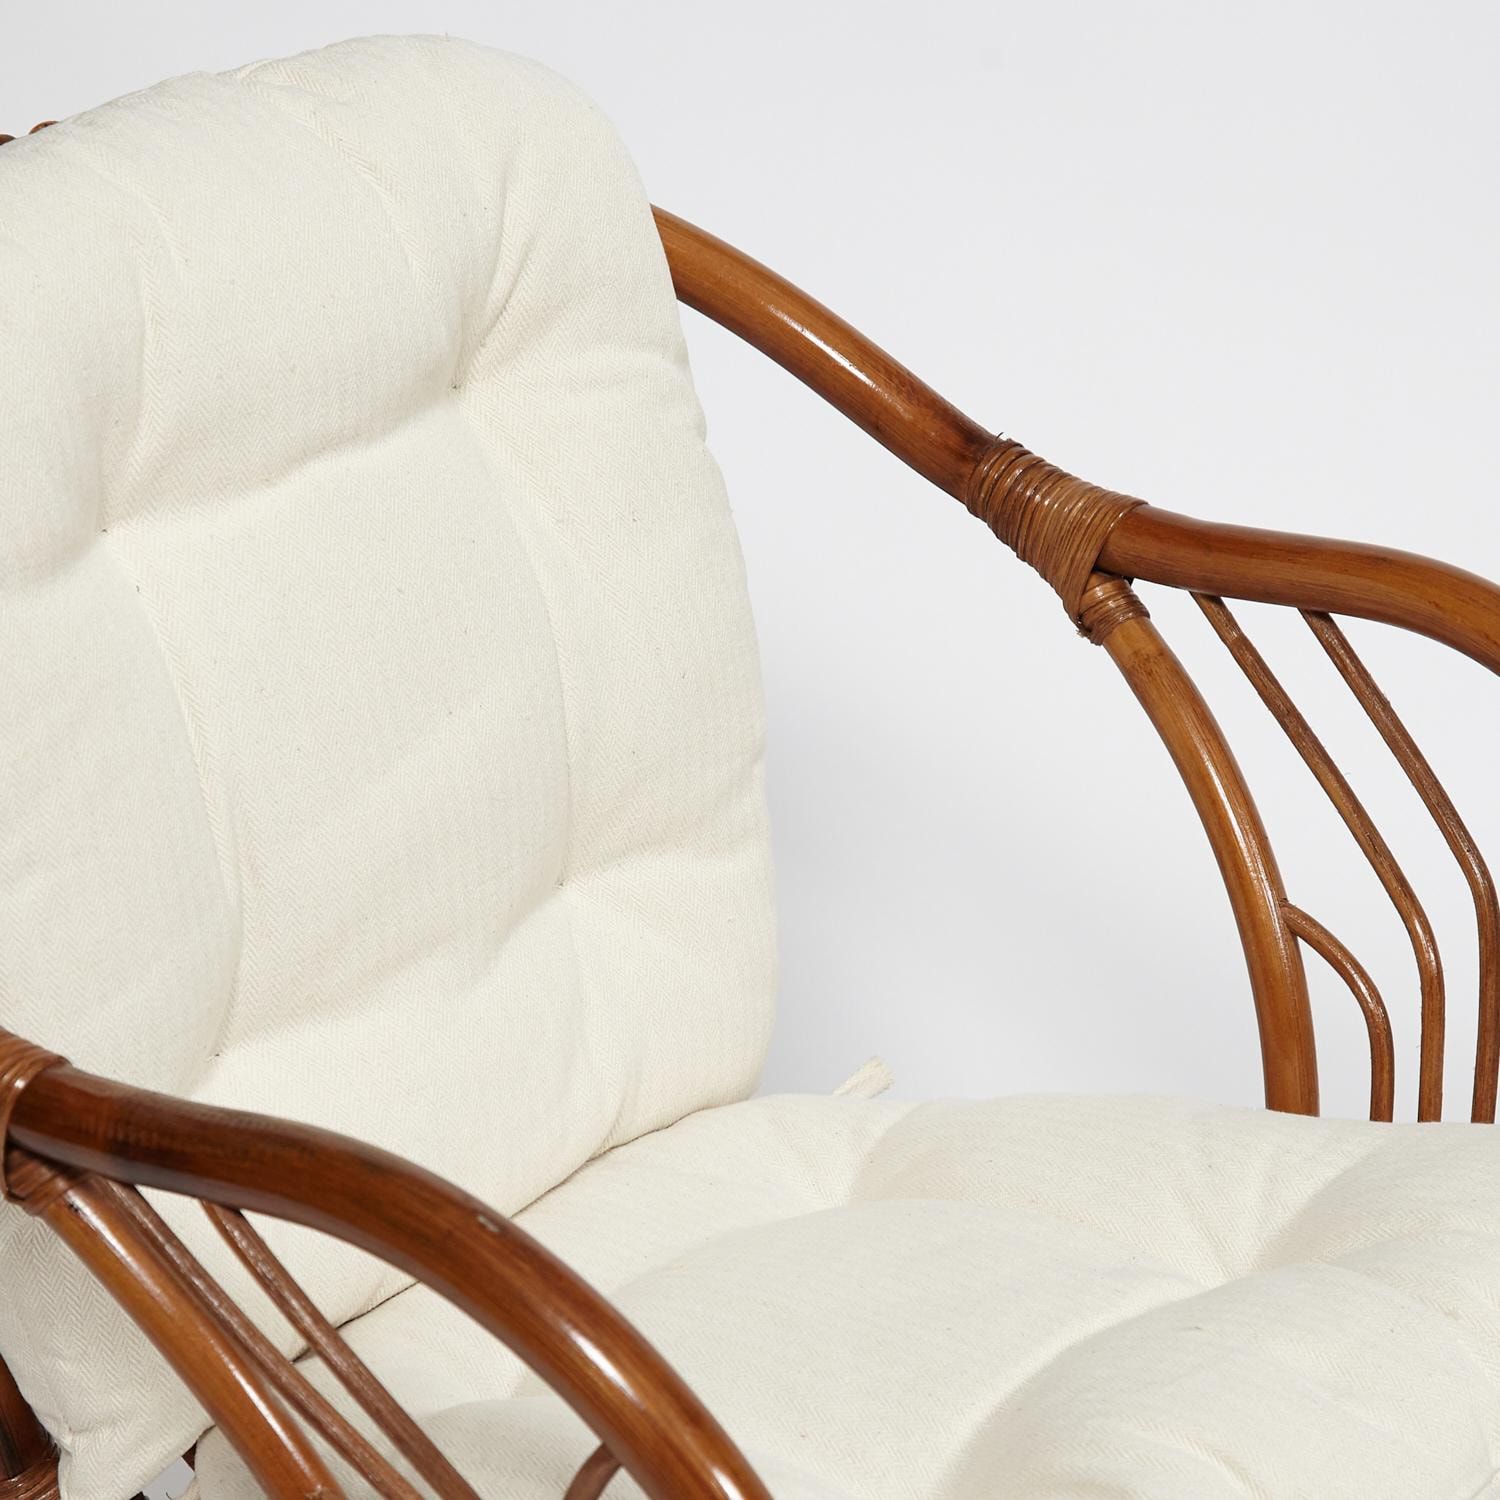 ТЕРРАСНЫЙ КОМПЛЕКТ NEW BOGOTA (2 кресла + стол) с подушками коричневый